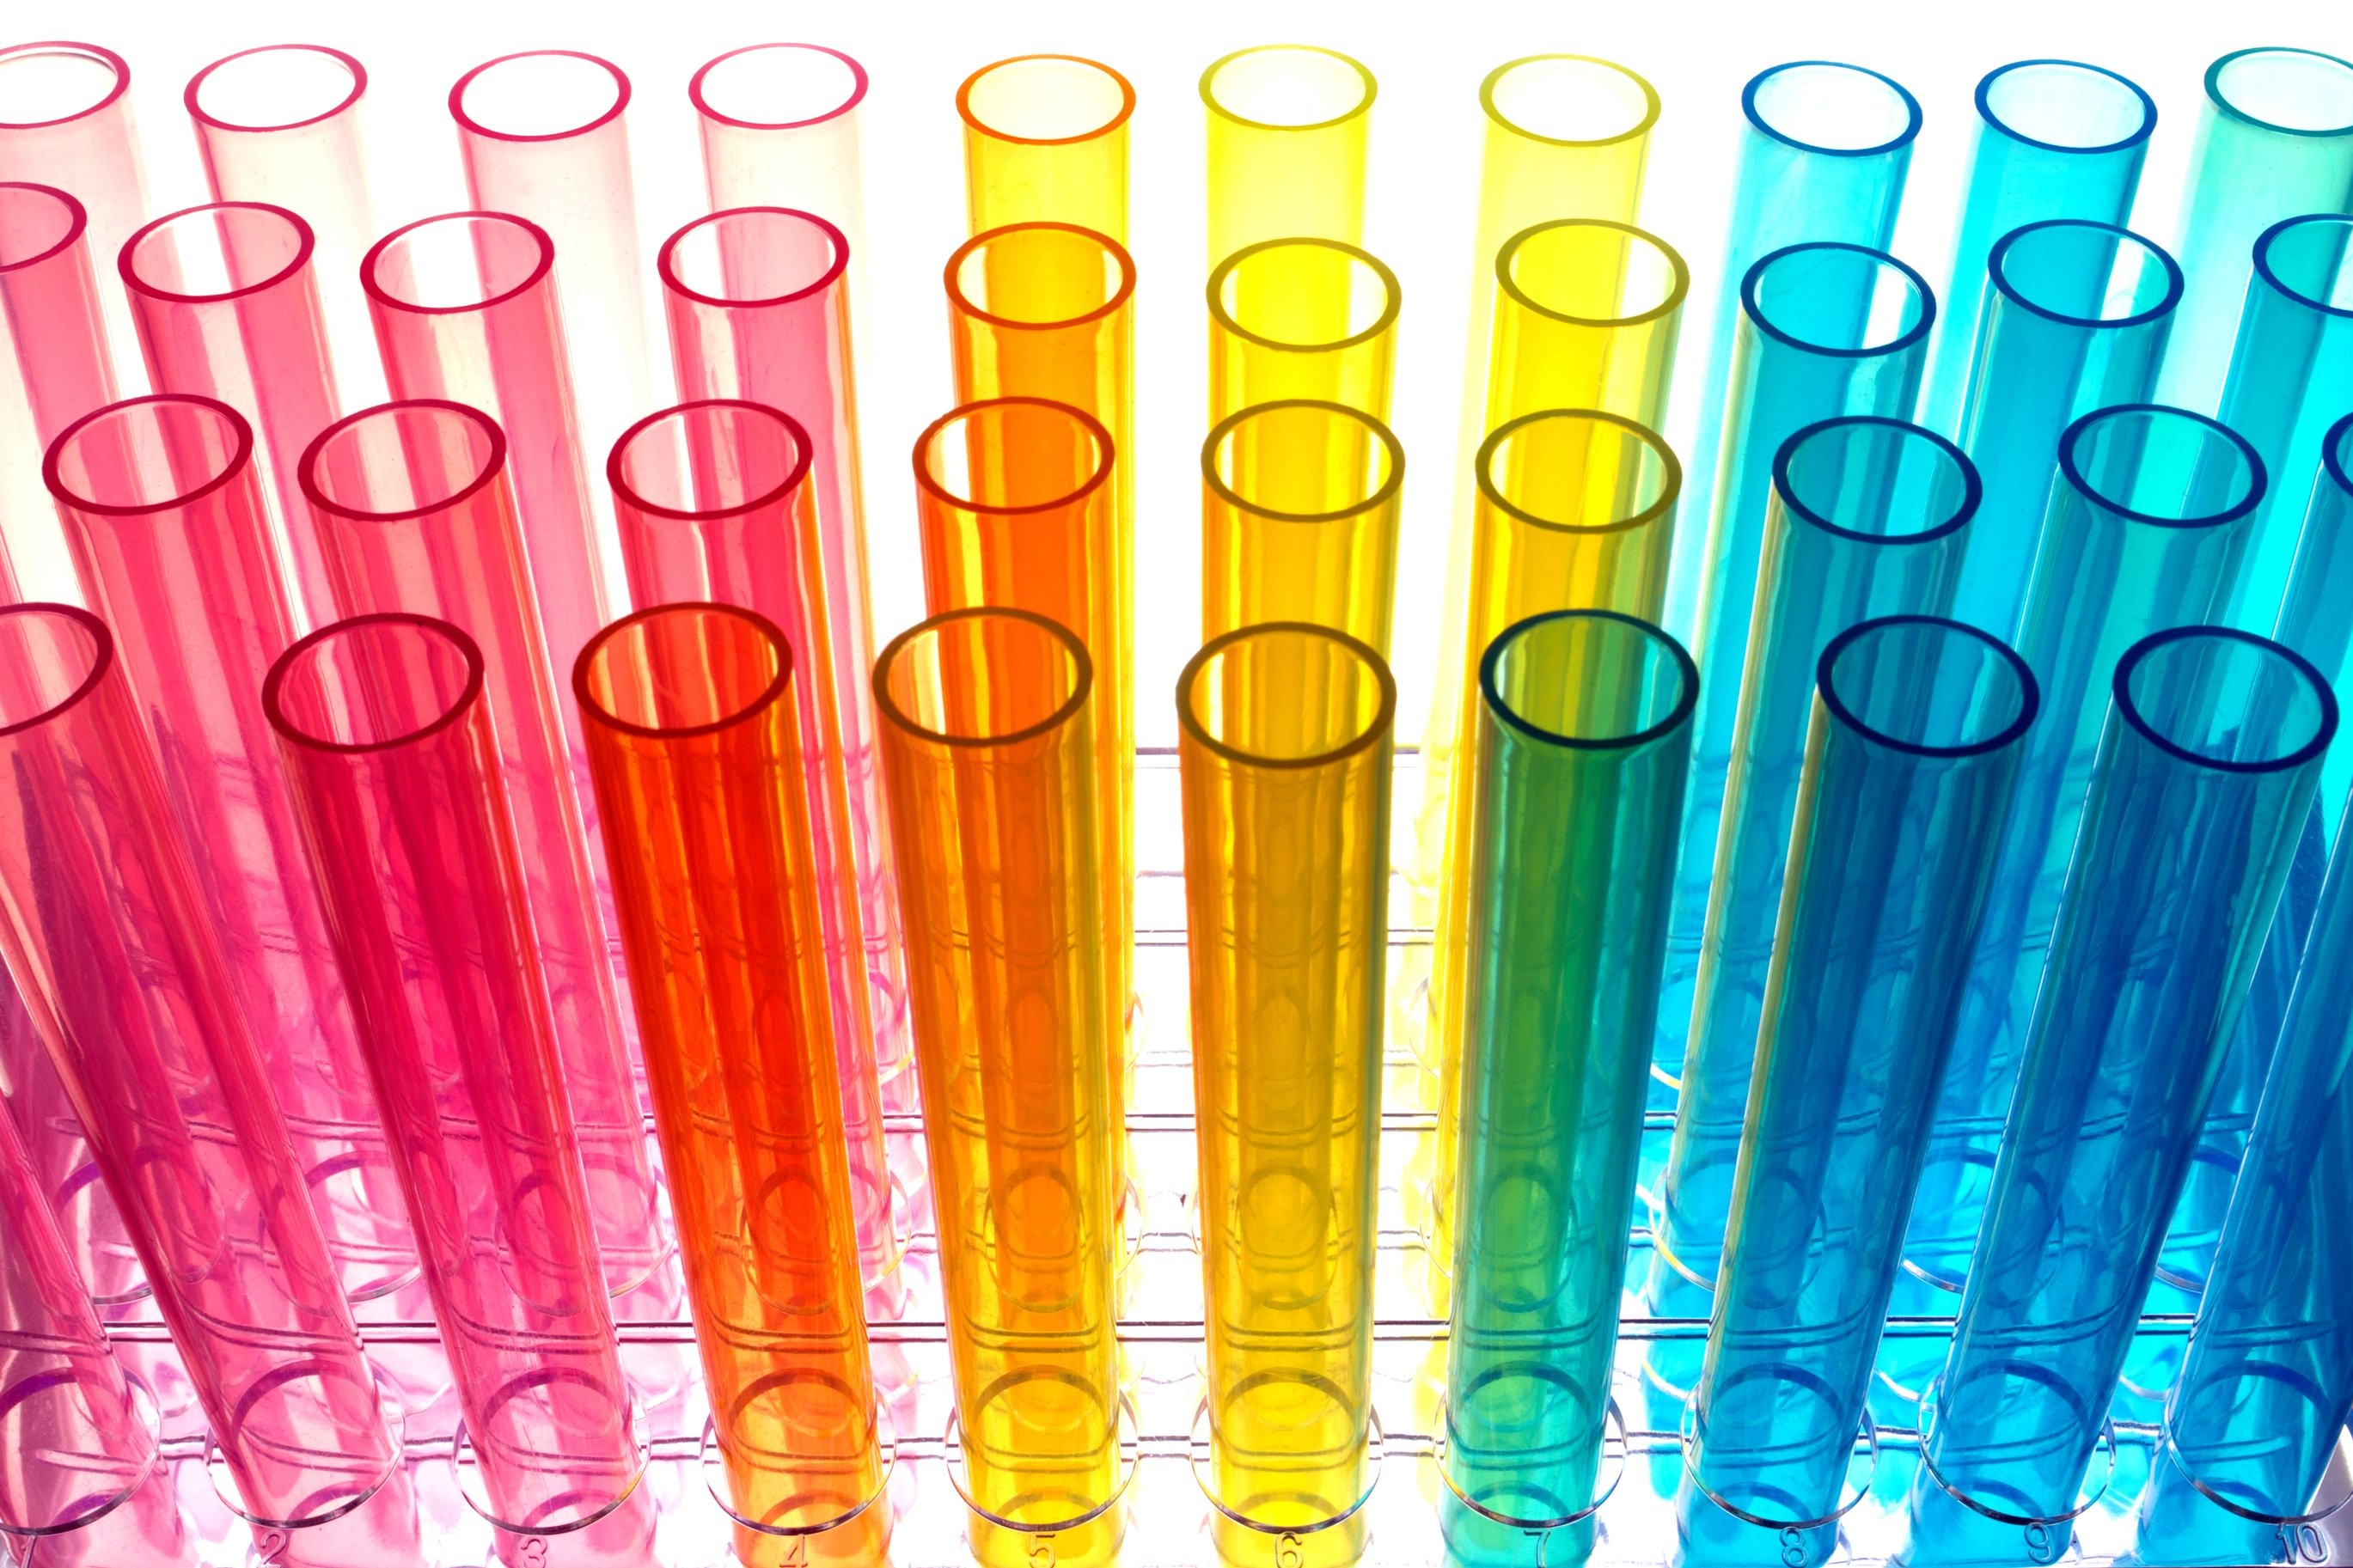 Glass tubes. Пробирки. Пробирки химические стеклянные. Разноцветные колбы. Разноцветное стекло.